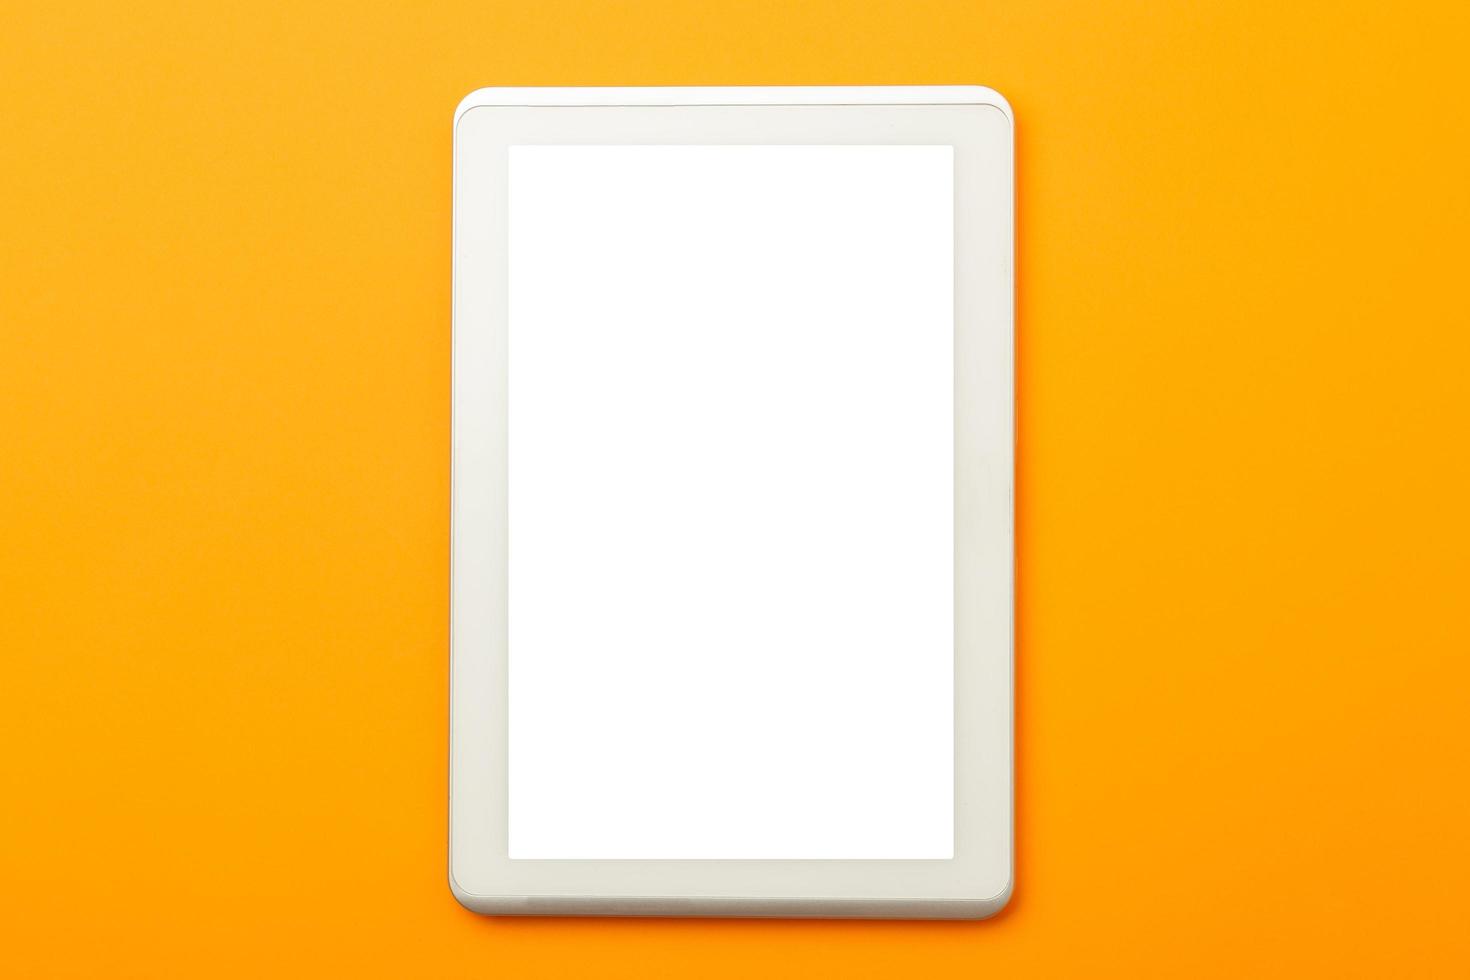 écran blanc de smartphone isolé sur fond orange photo